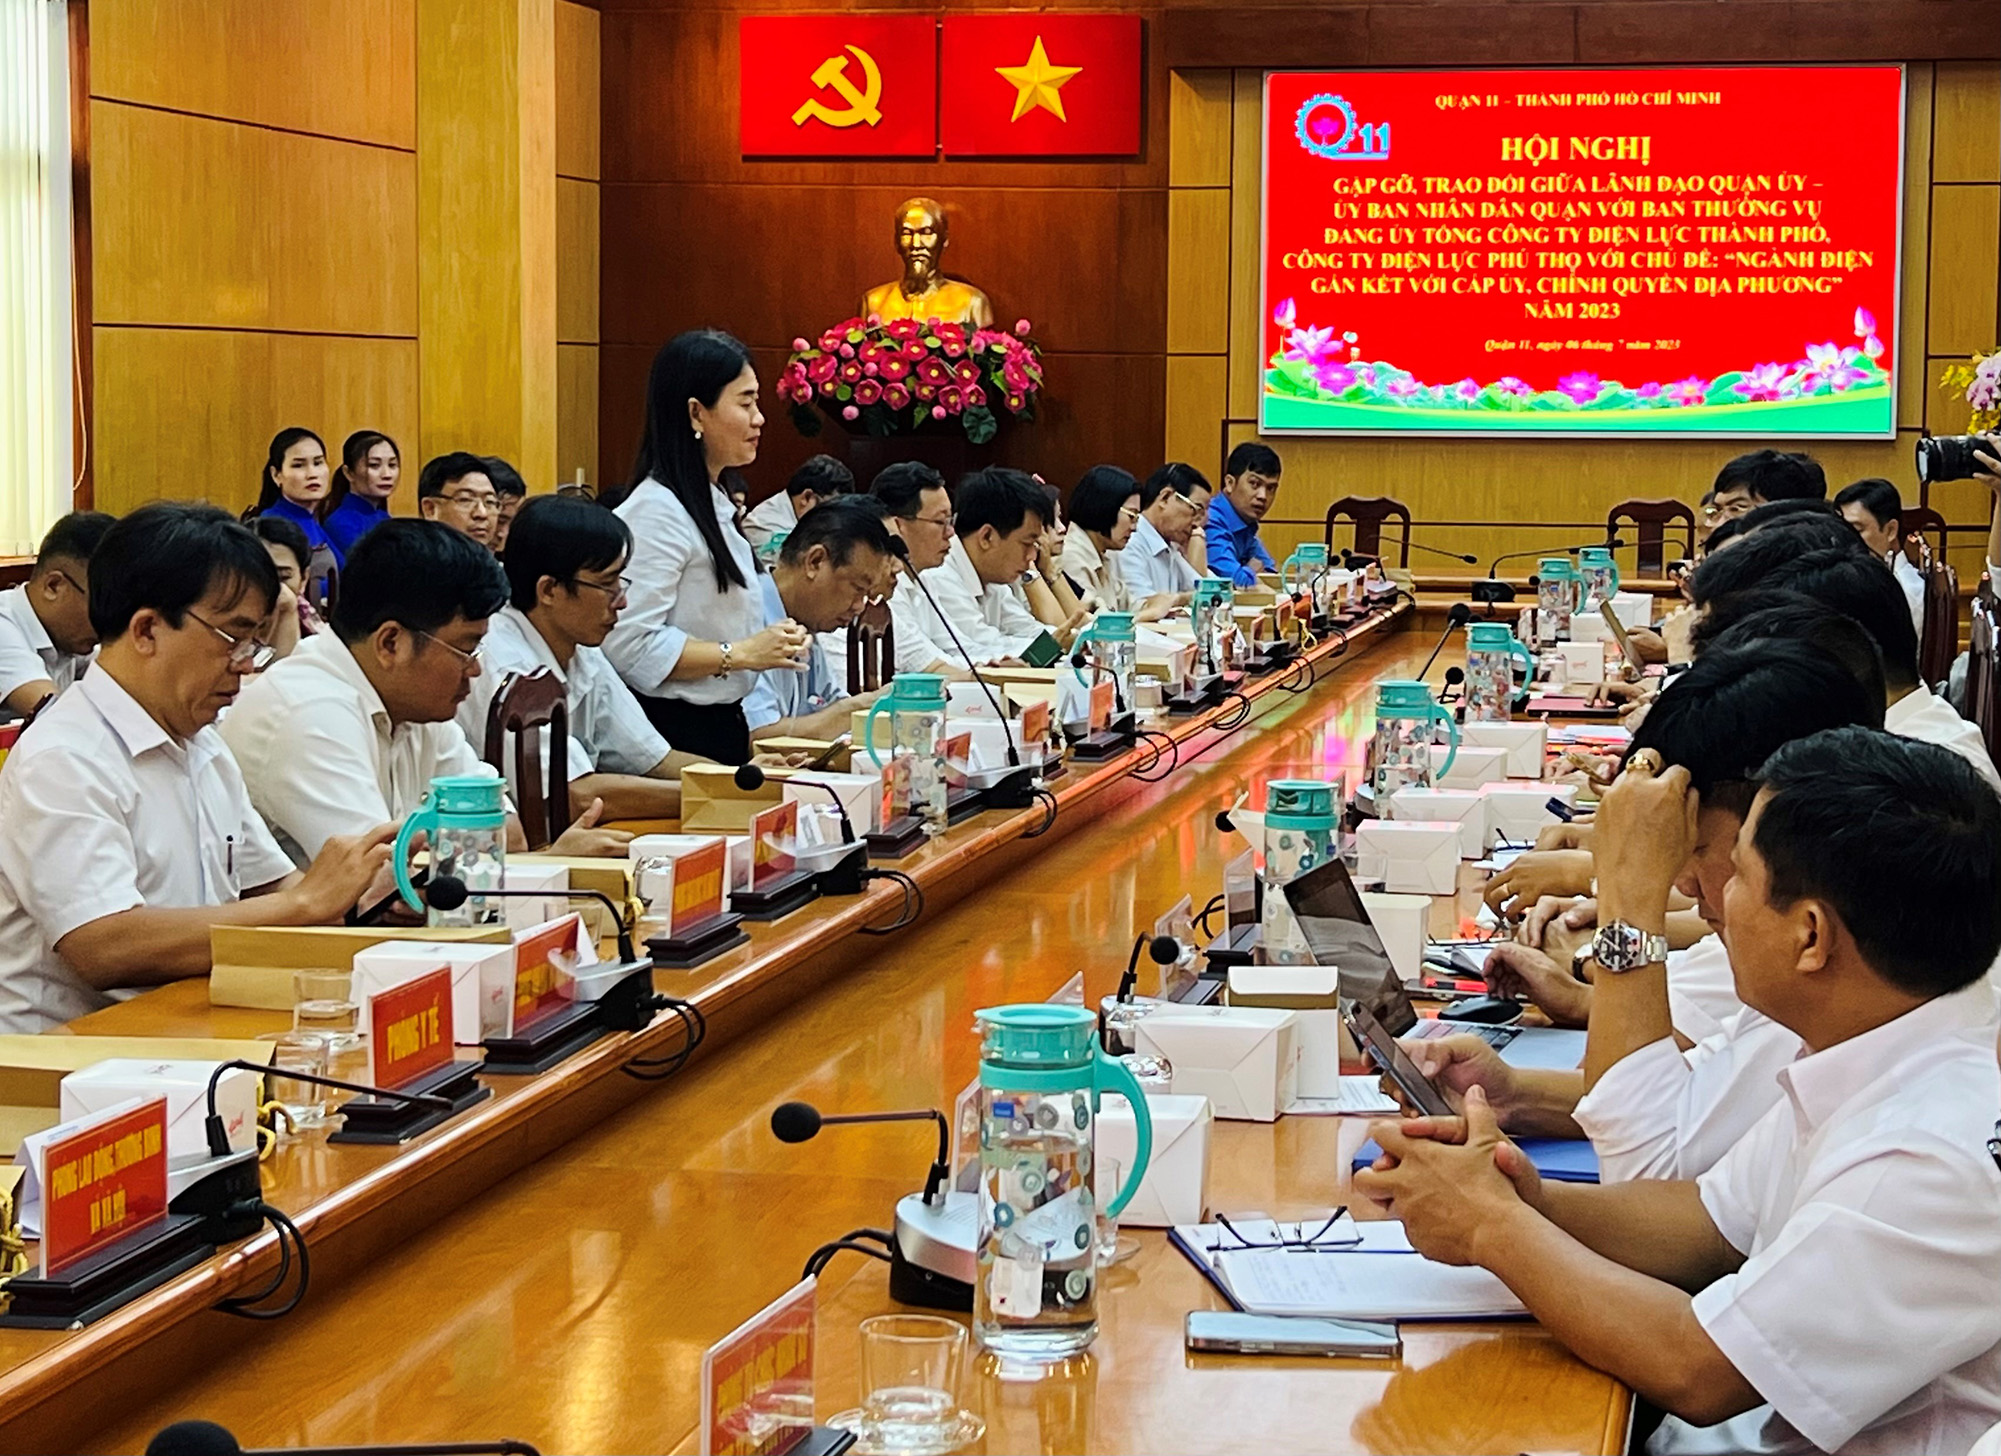 Đồng chí Trần Thị Bích Trâm - Phó Chủ tịch UBND quận 11 phát biểu chỉ đạo tại hội nghị.